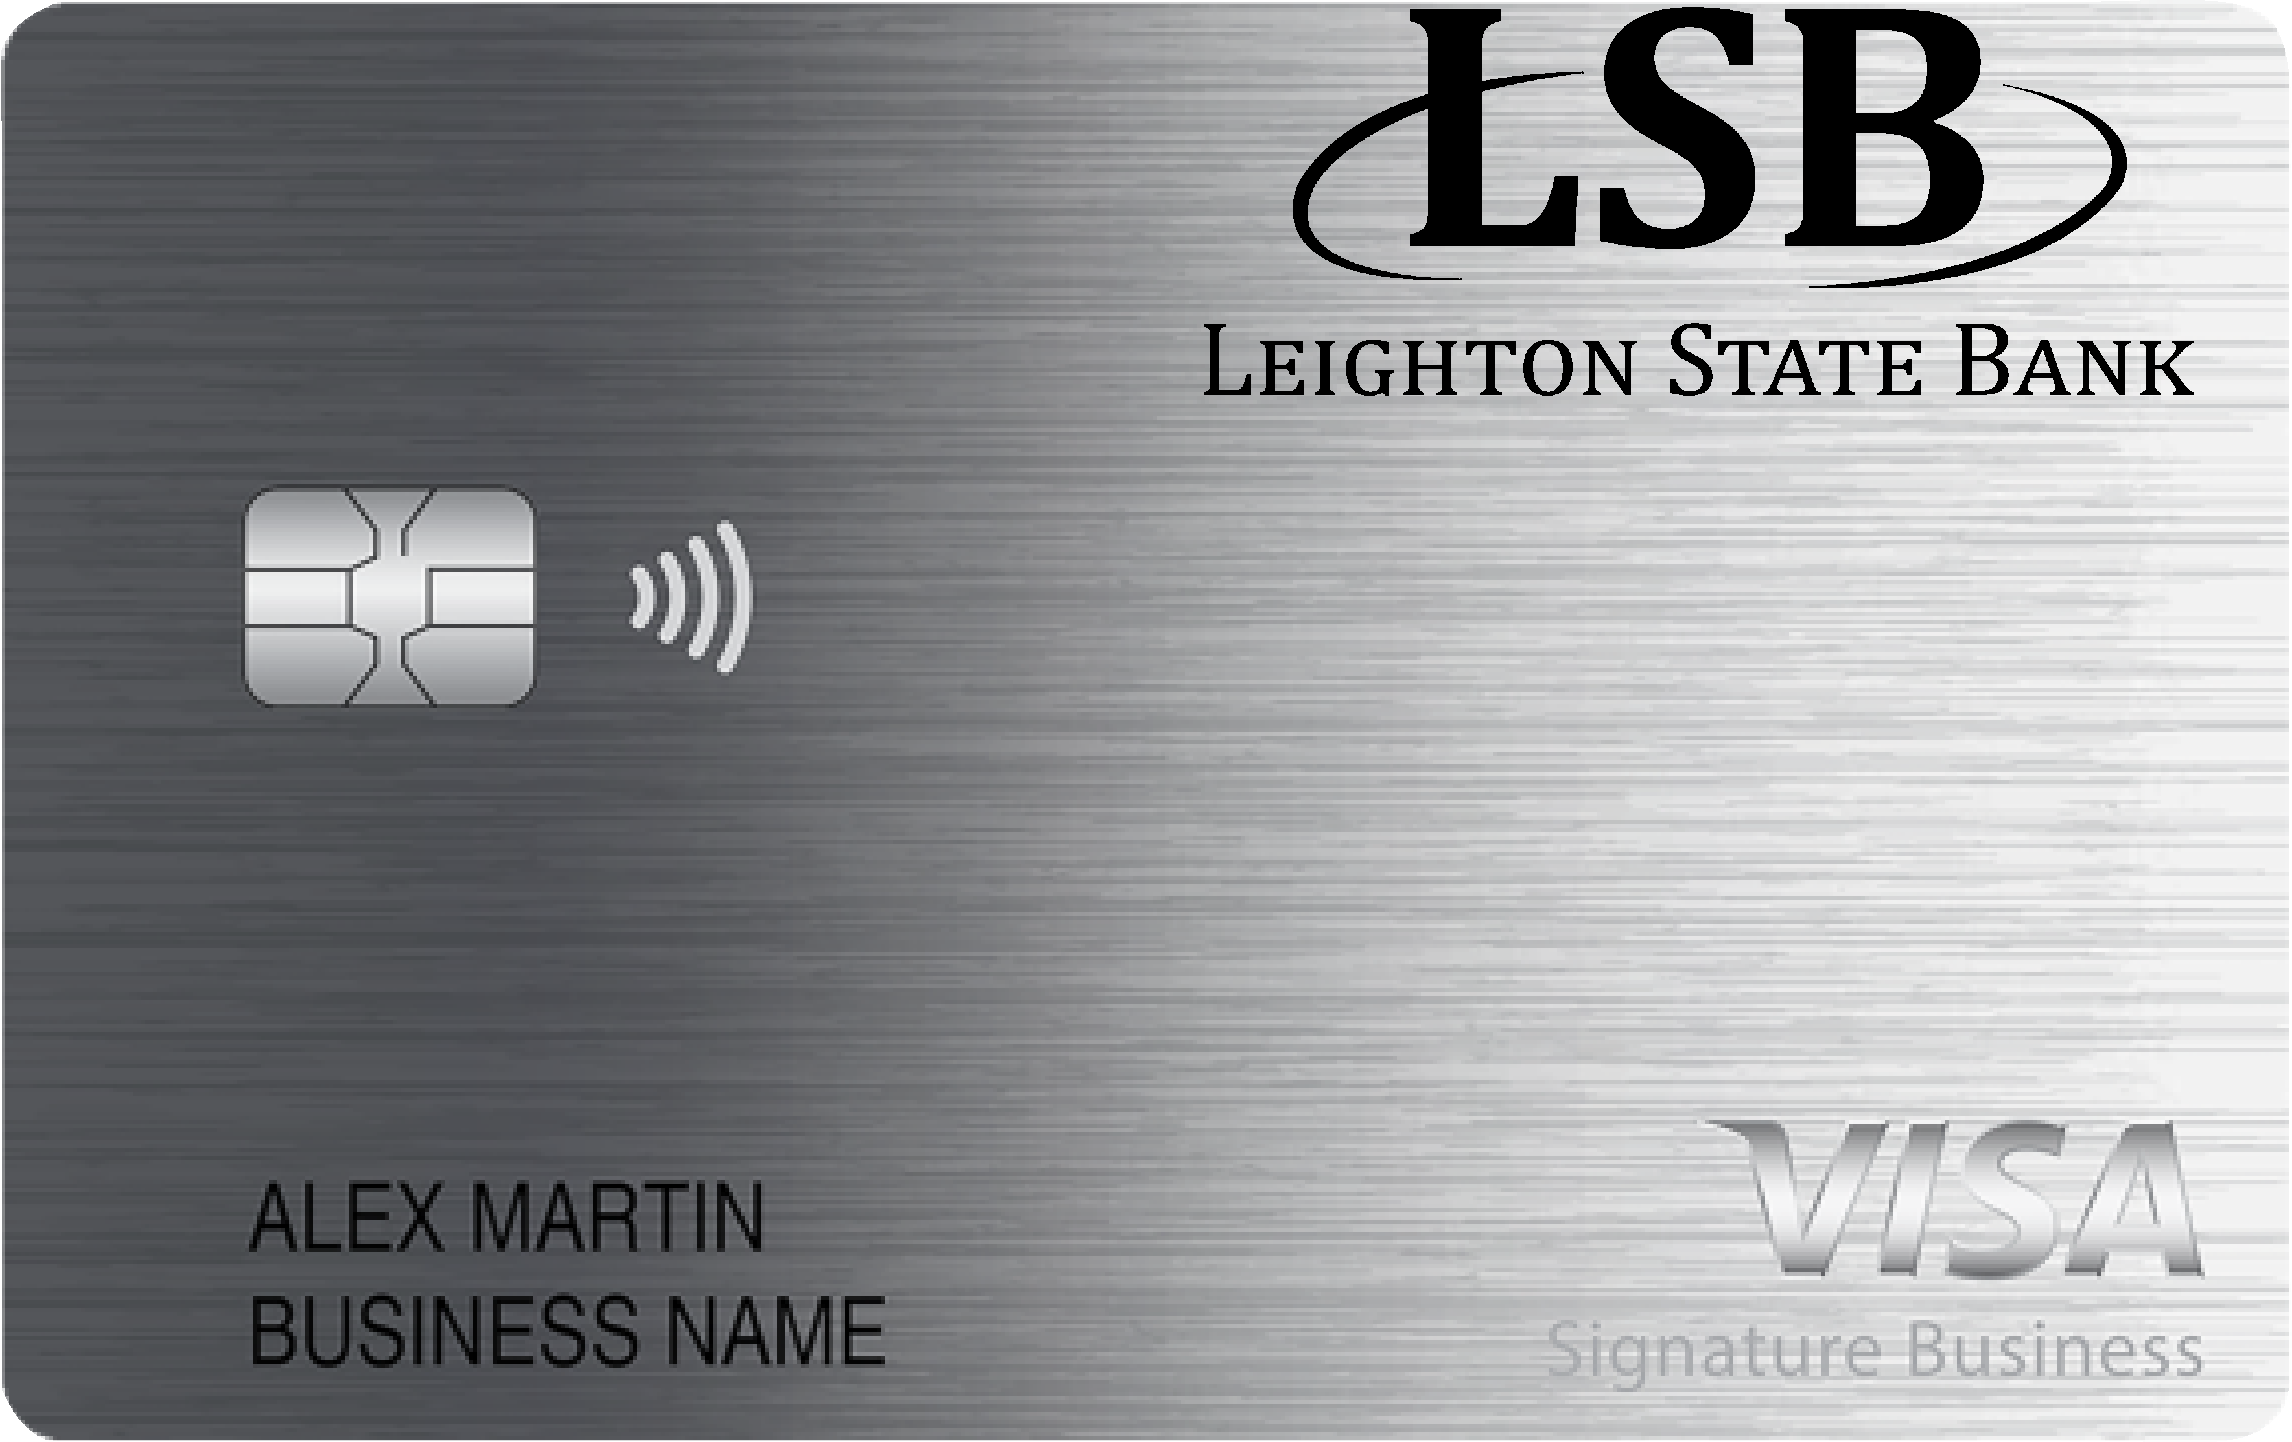 Leighton State Bank